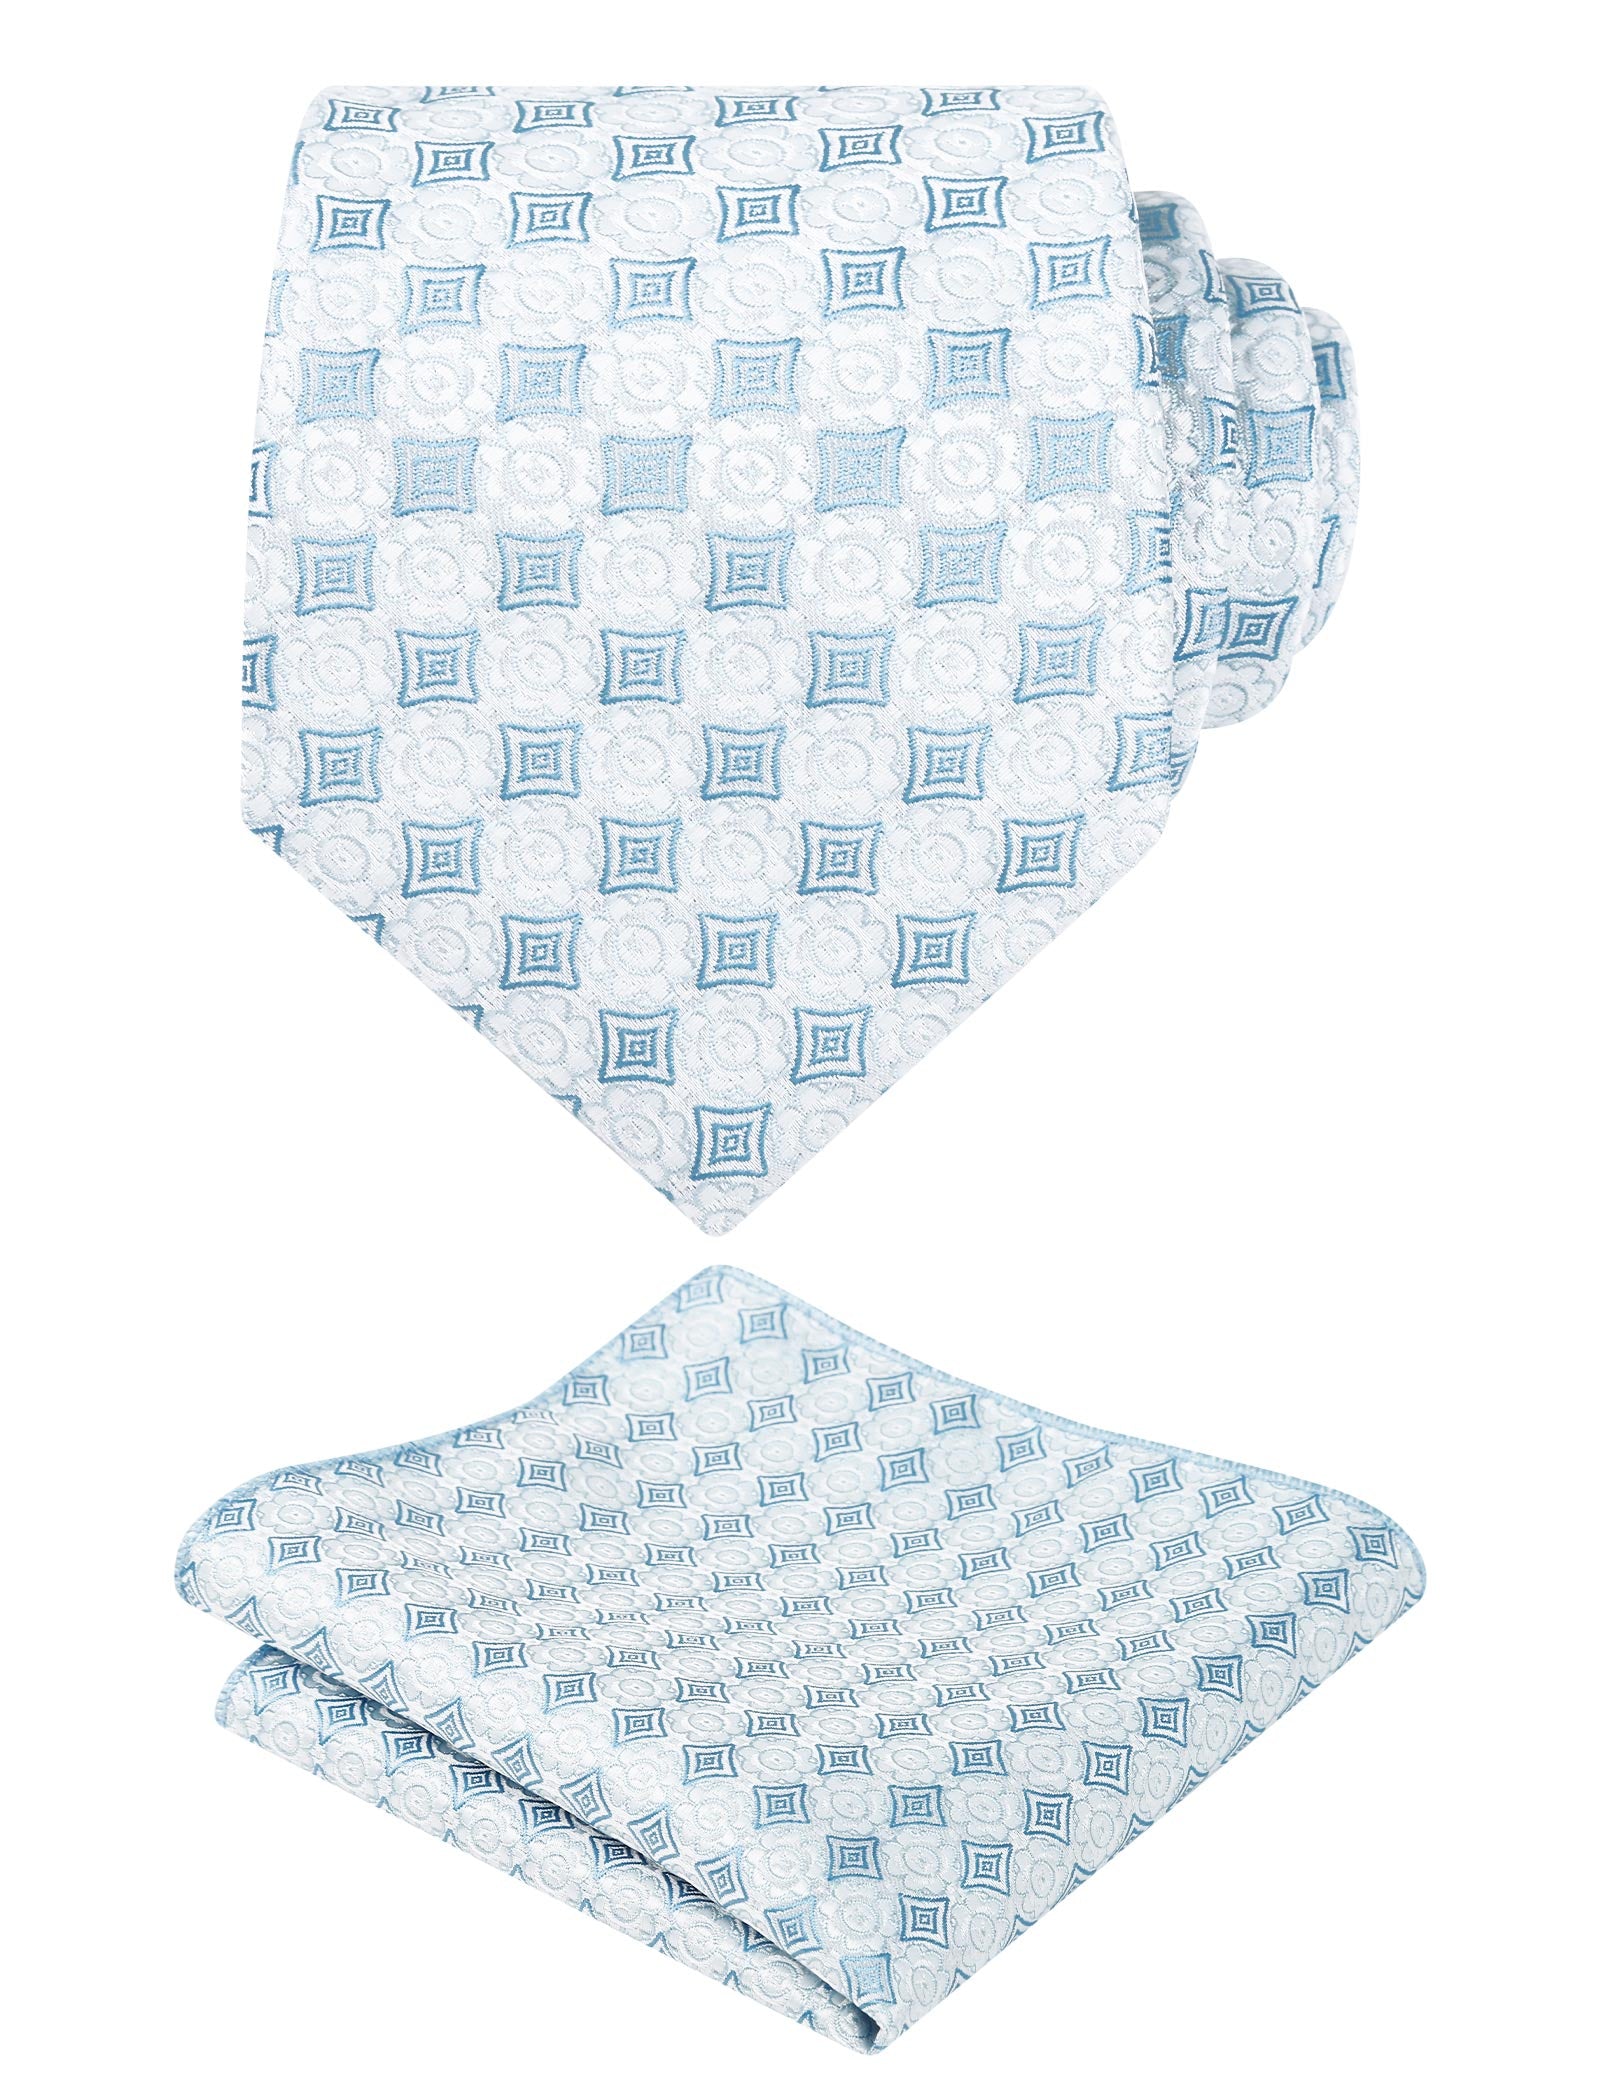 Men's Flower Tie with Floarl Pattern Pocket Square 3.15inches Necktie Set, 149